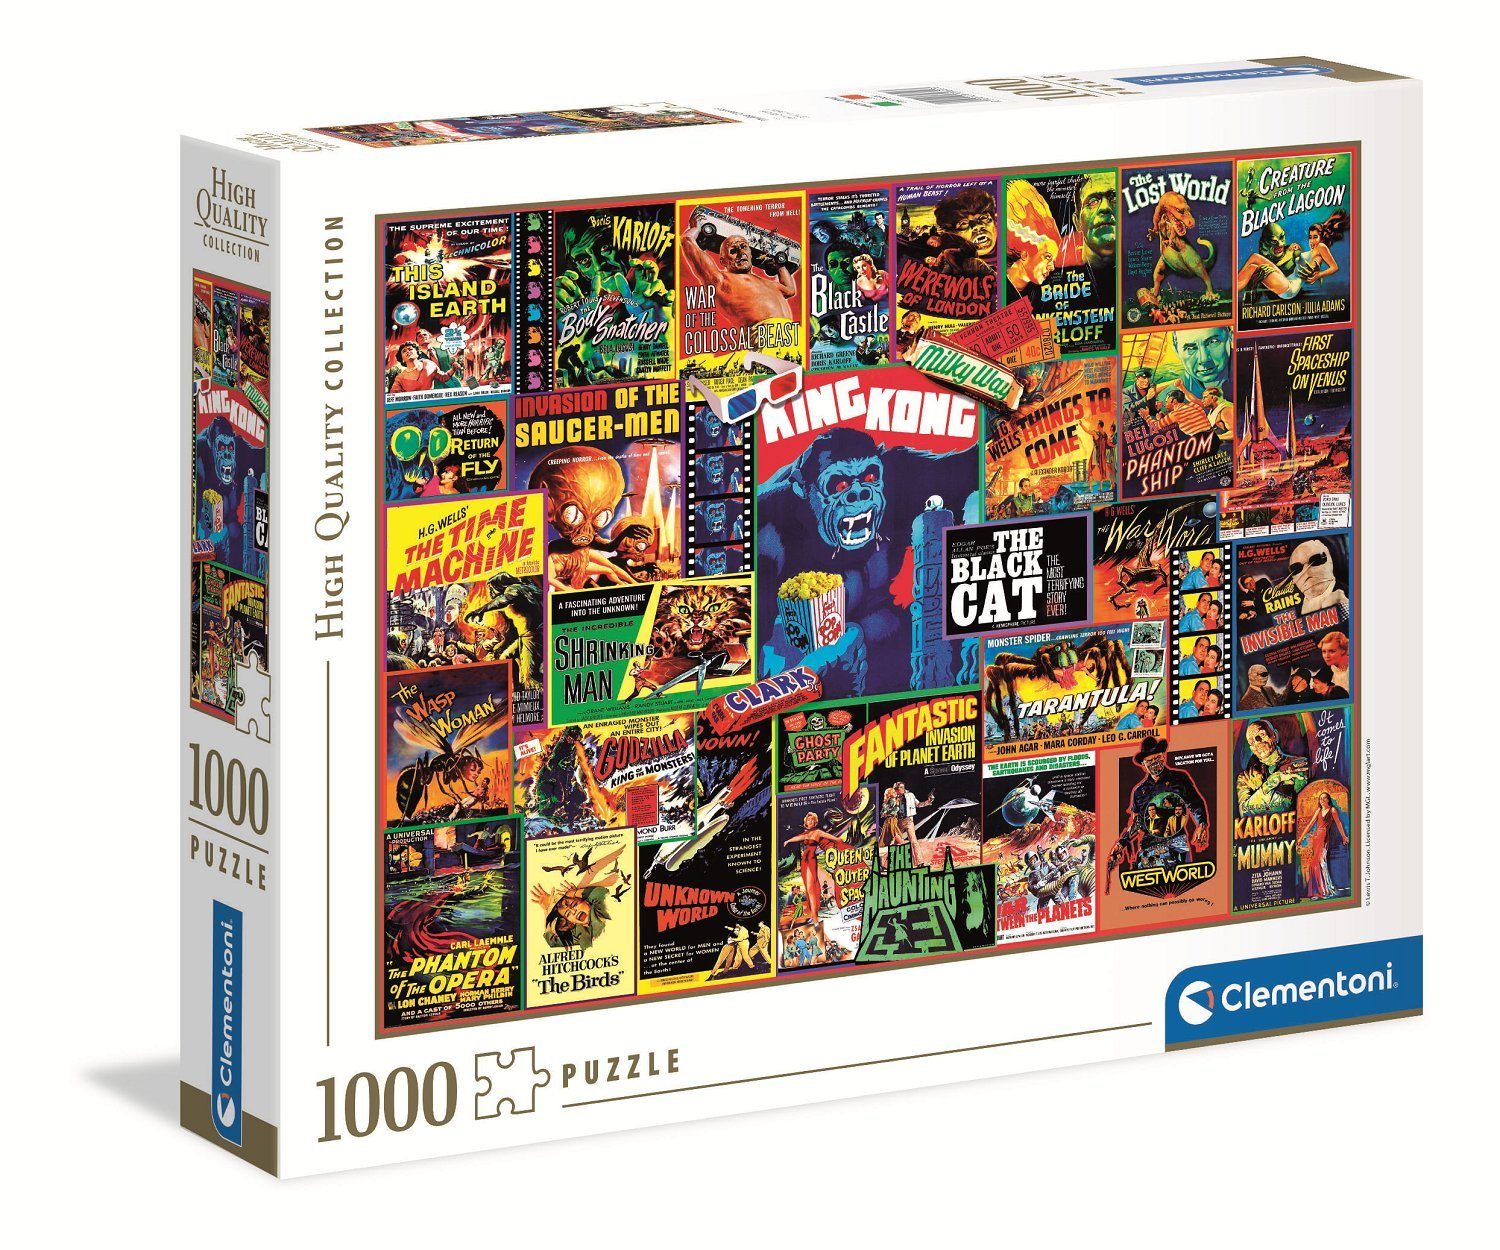 Clementoni® Puzzle 39602 Thriller-Klassiker 1000 Teile Puzzle, Puzzleteile